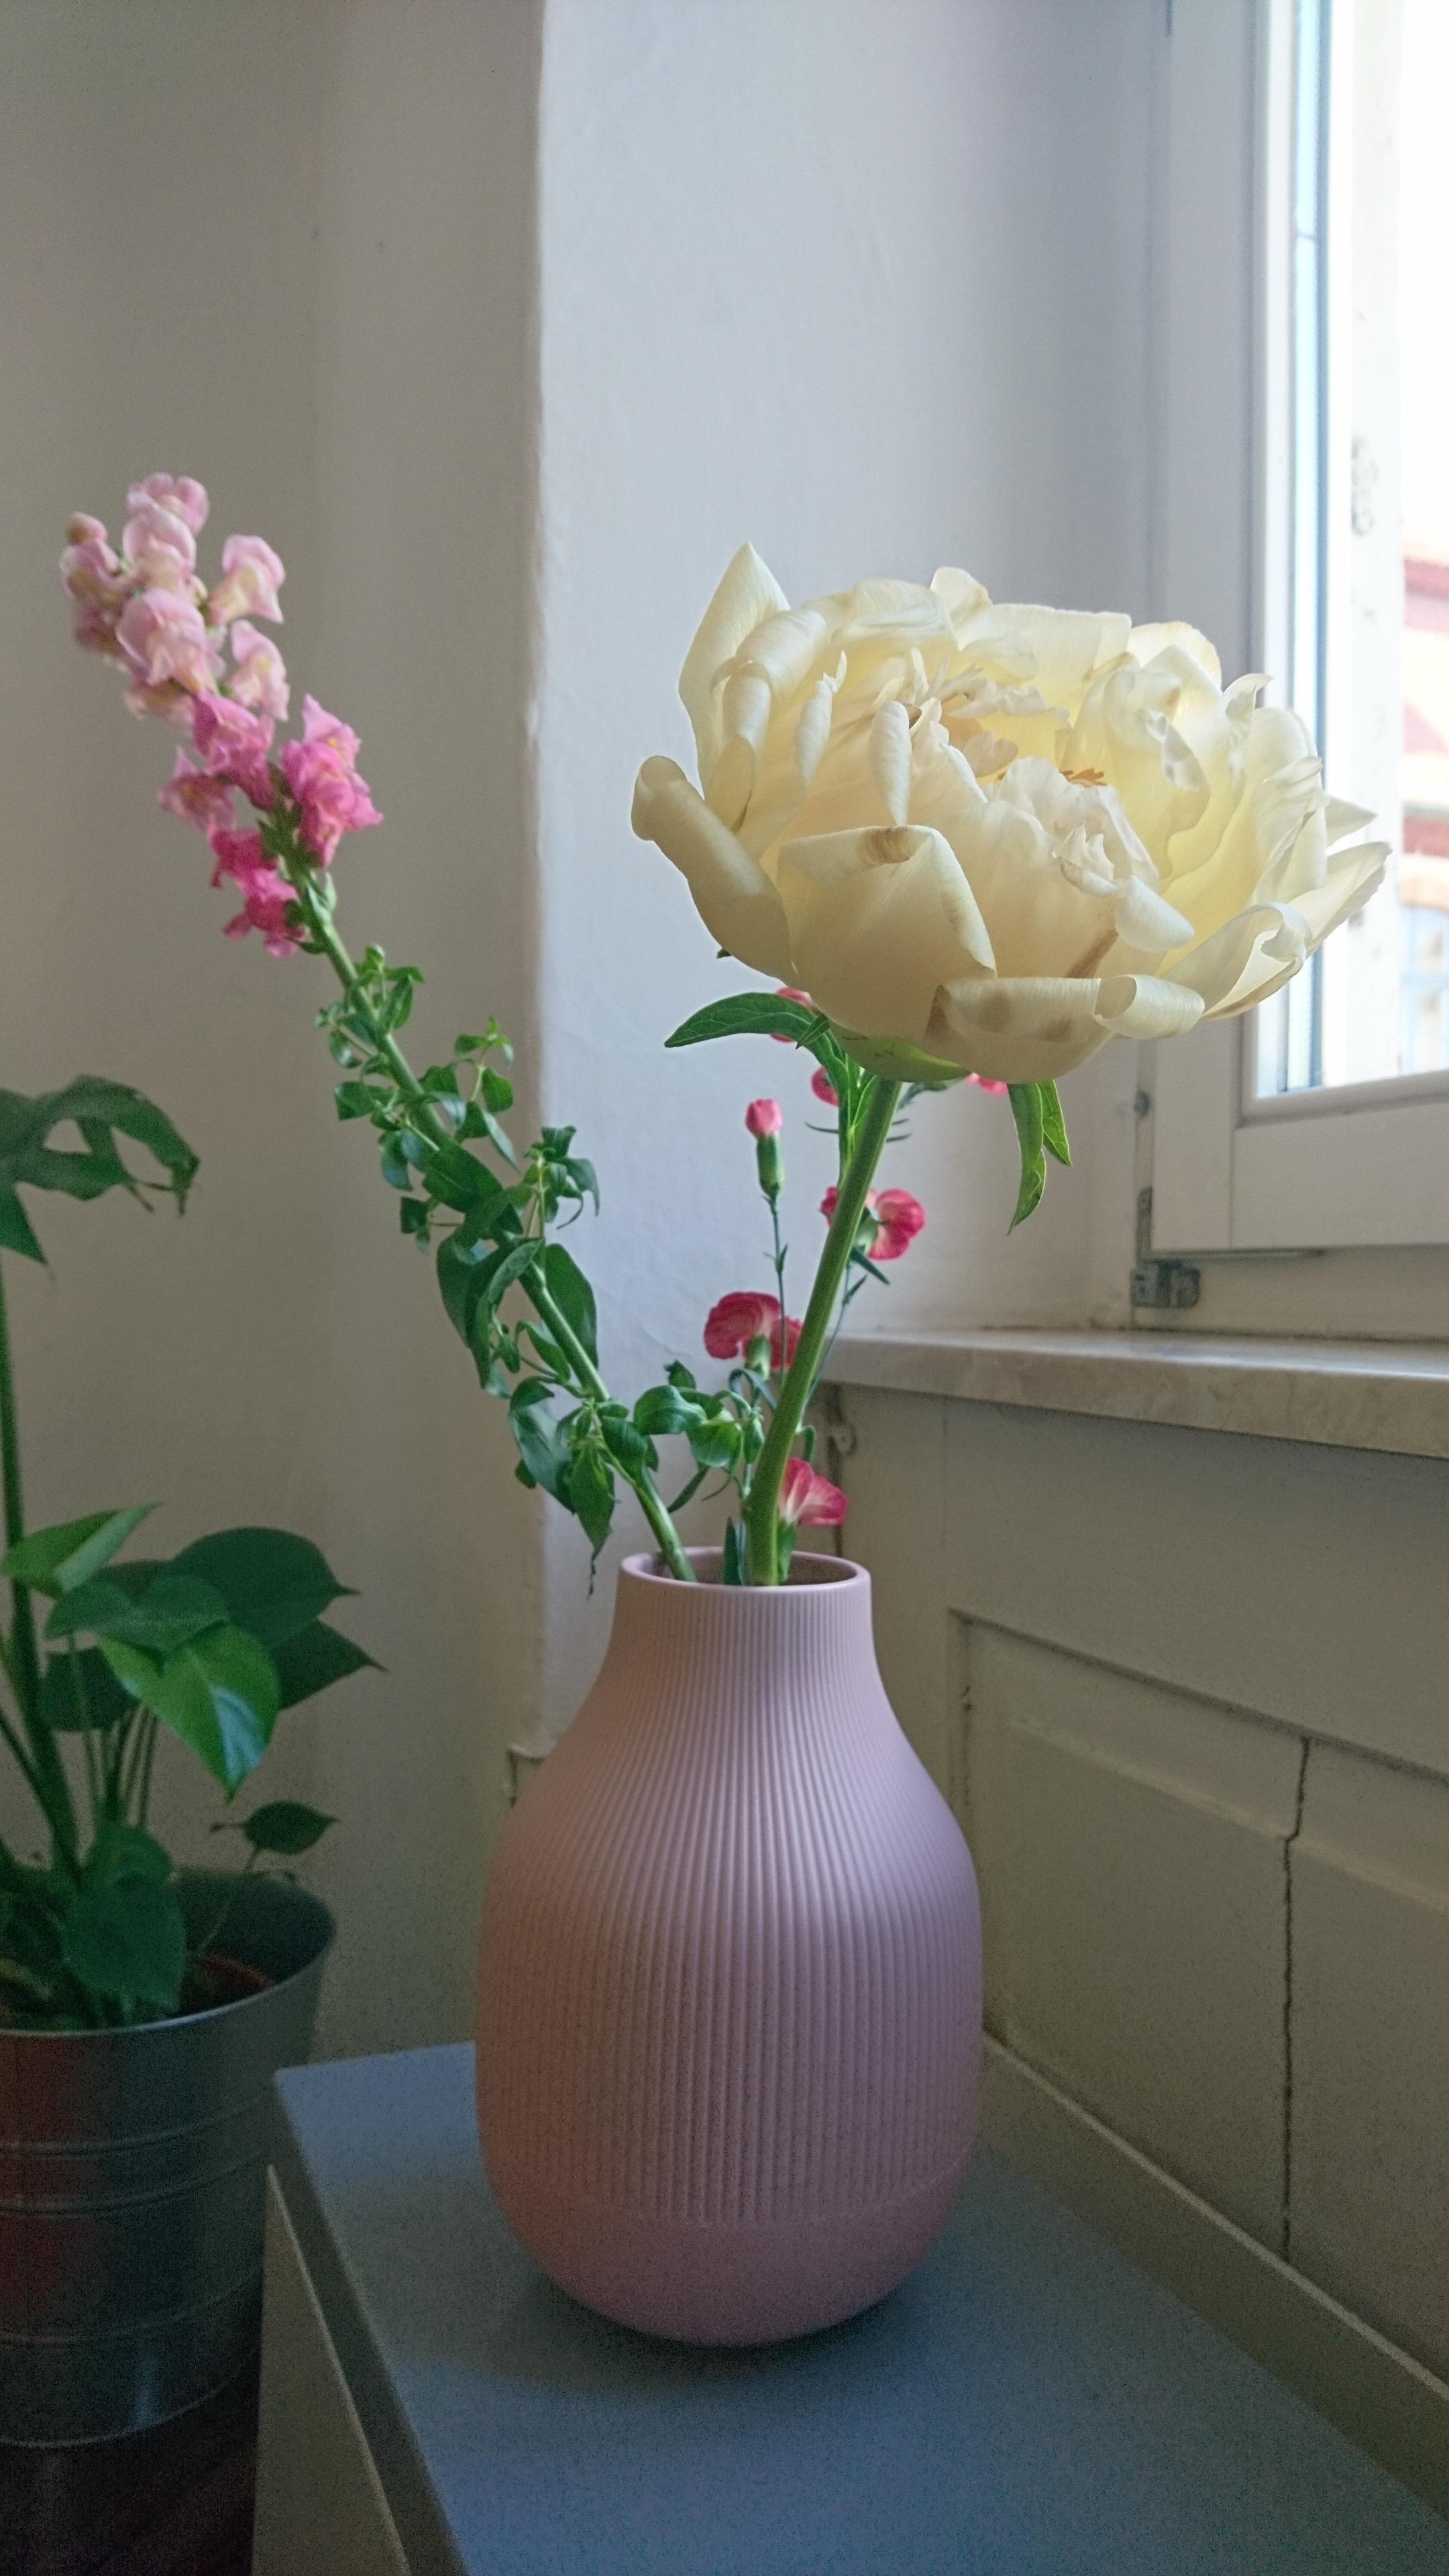 Neue Vase und #pfingstrosen 😍 Oke nur eine 😇 #pink #deko #freshflowerfriday 